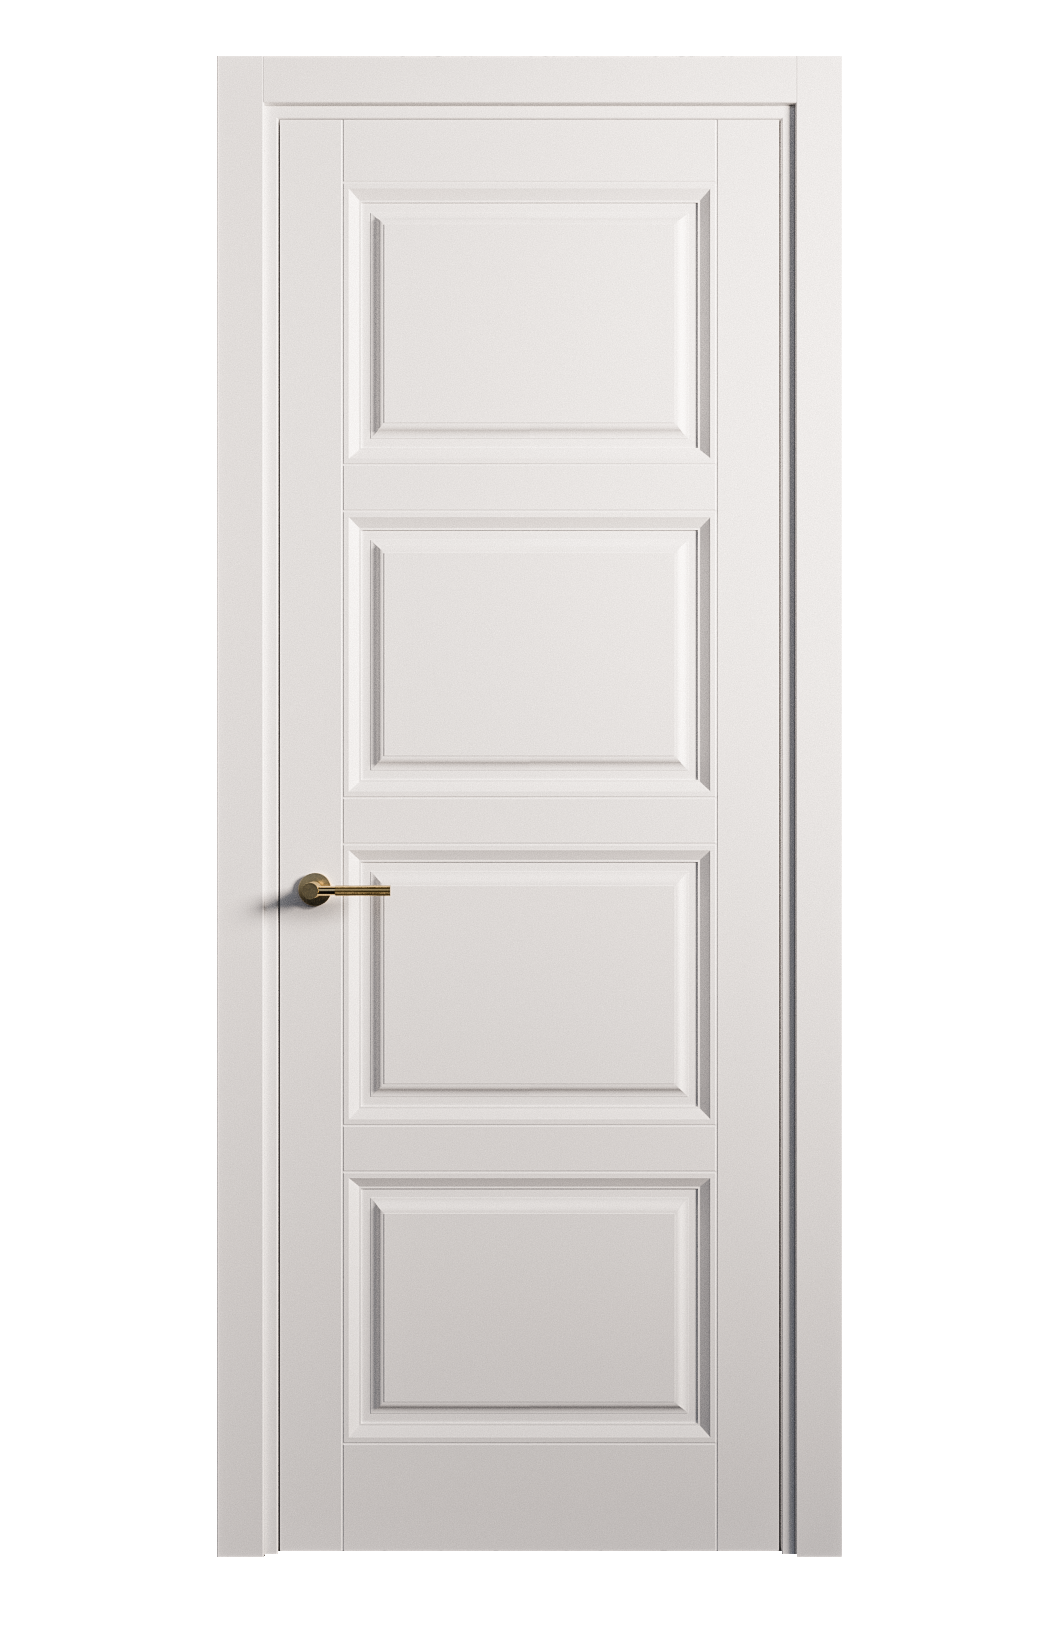 Межкомнатная дверь Venezia-4 глухая эмаль ral 9003 25855